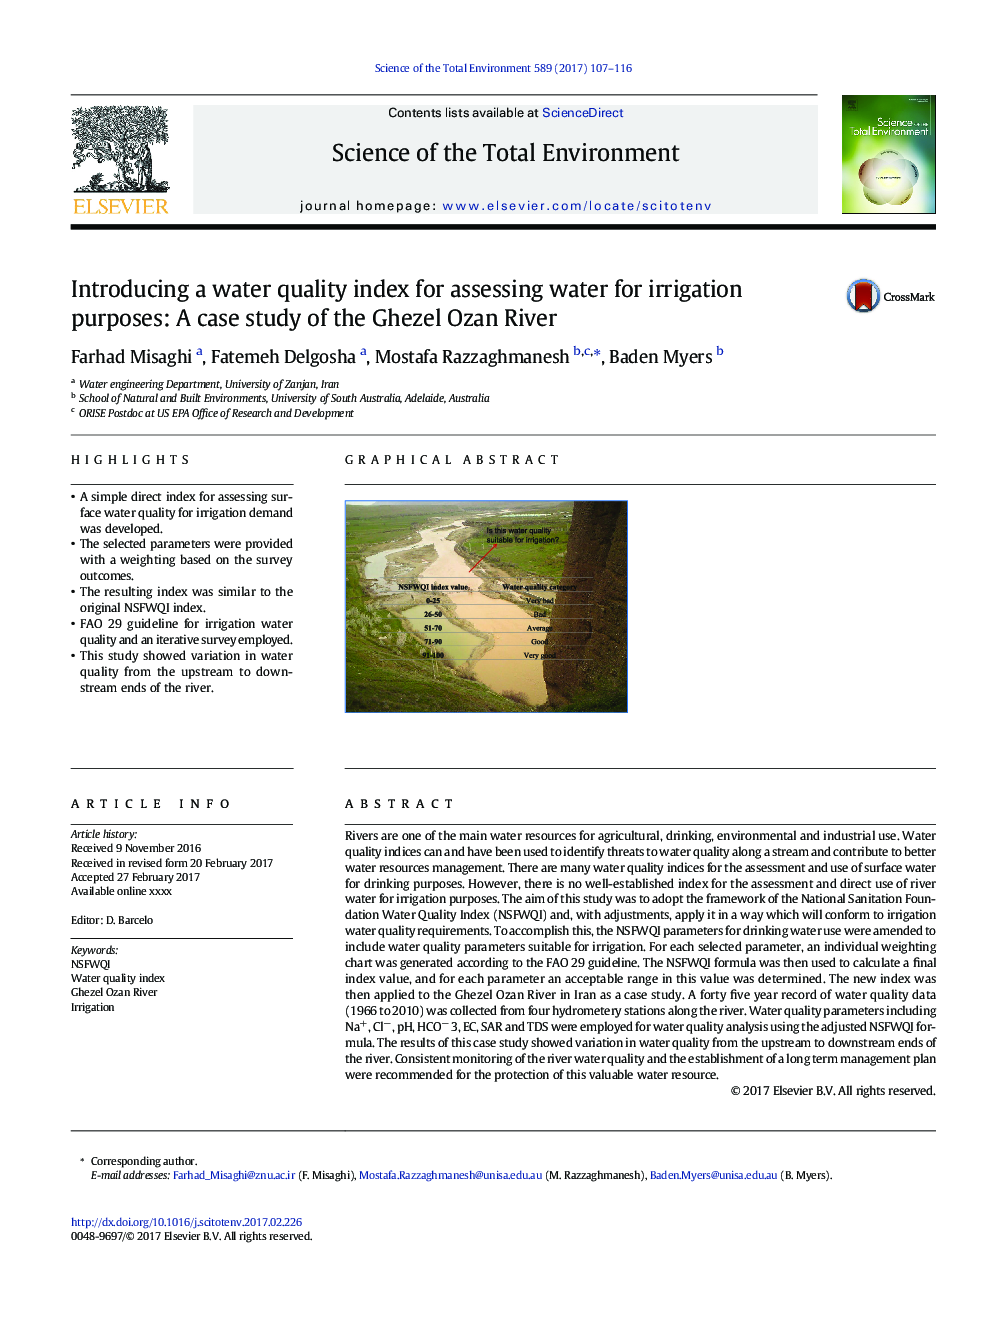 معرفی یک شاخص کیفیت آب برای ارزیابی آب برای اهداف آبیاری: مطالعه موردی رودخانه قزل اوزان 